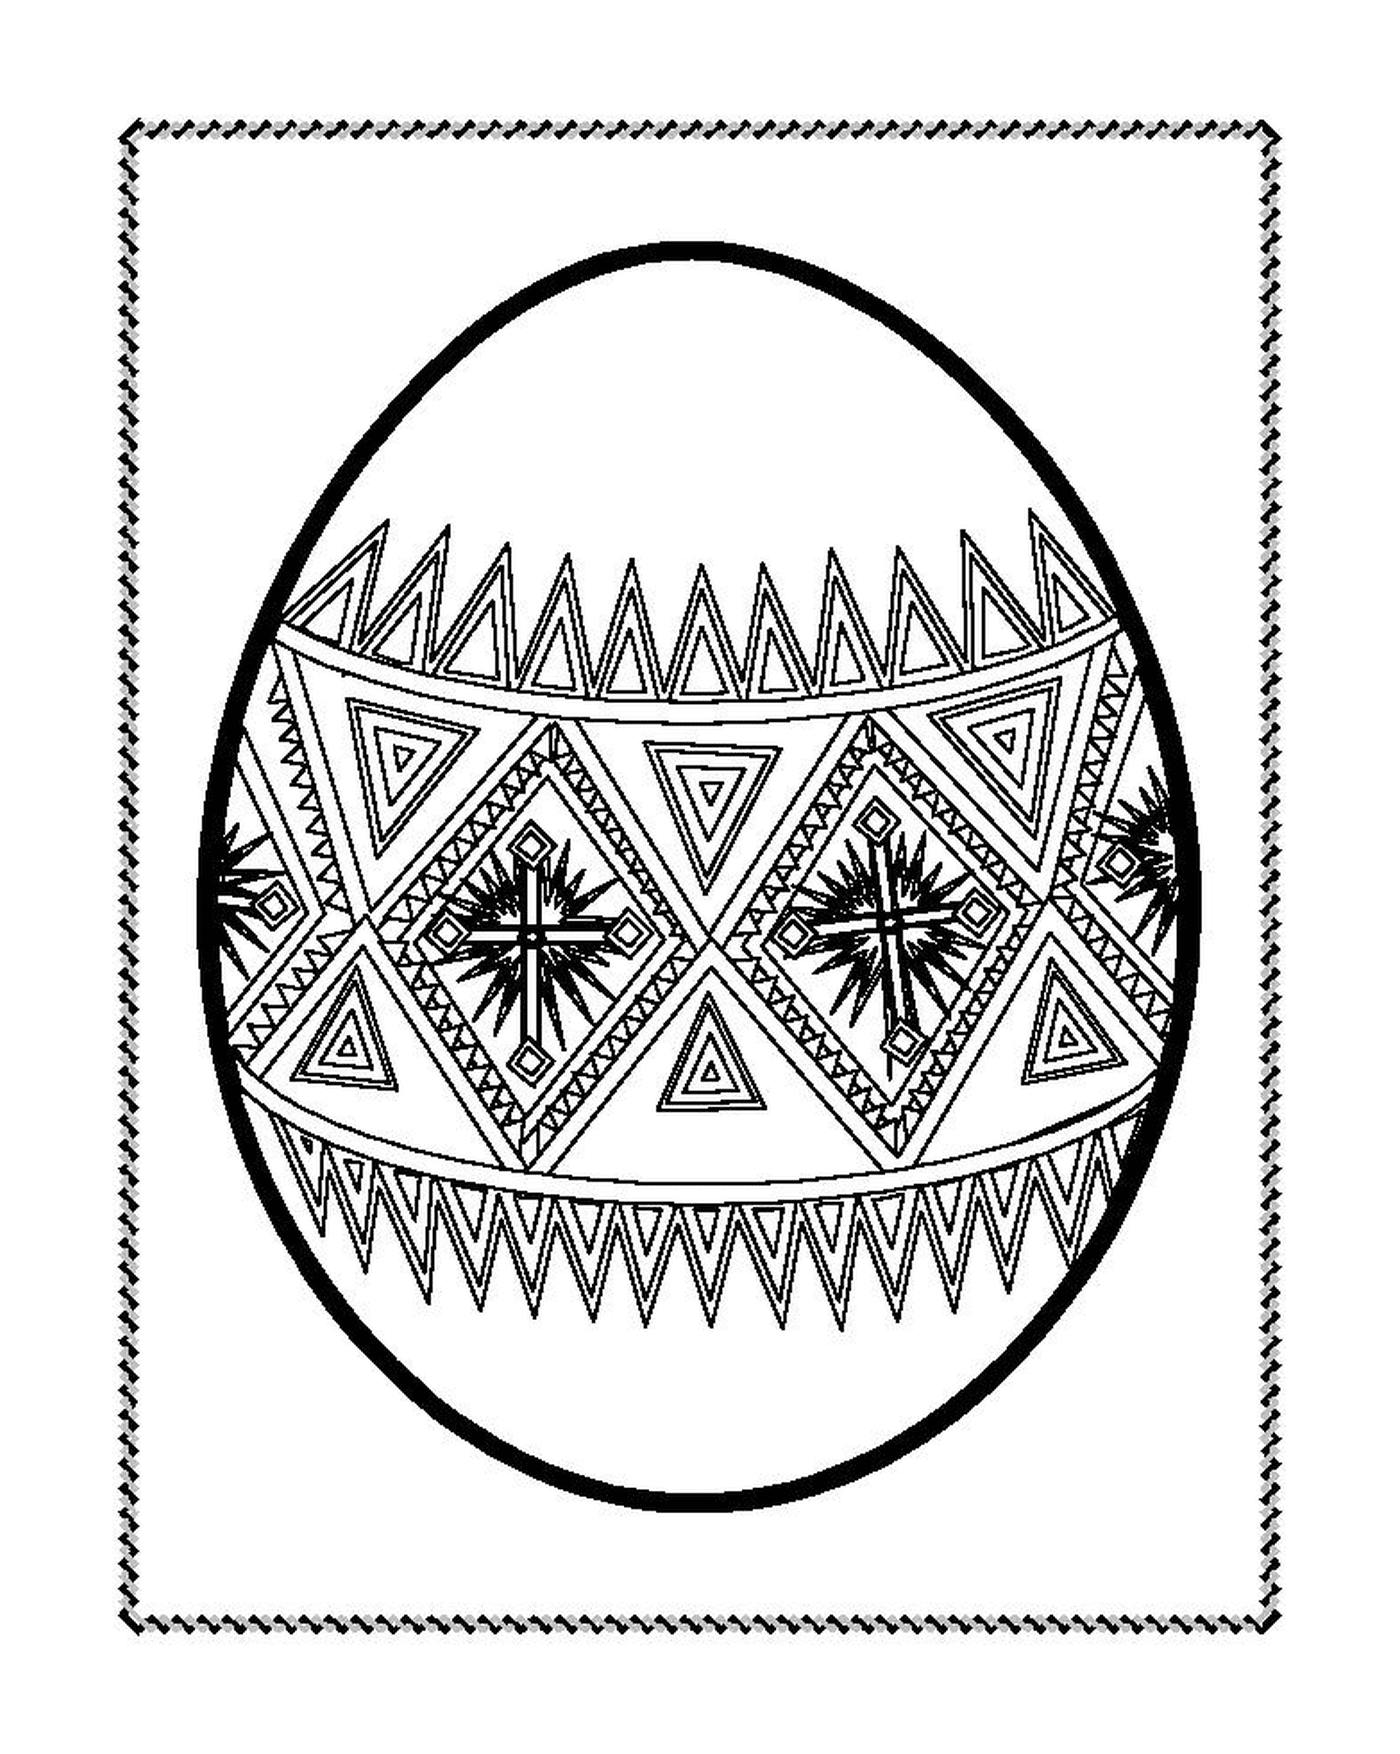  Пасхальное яйцо, украшенное геометрическими мотивами 